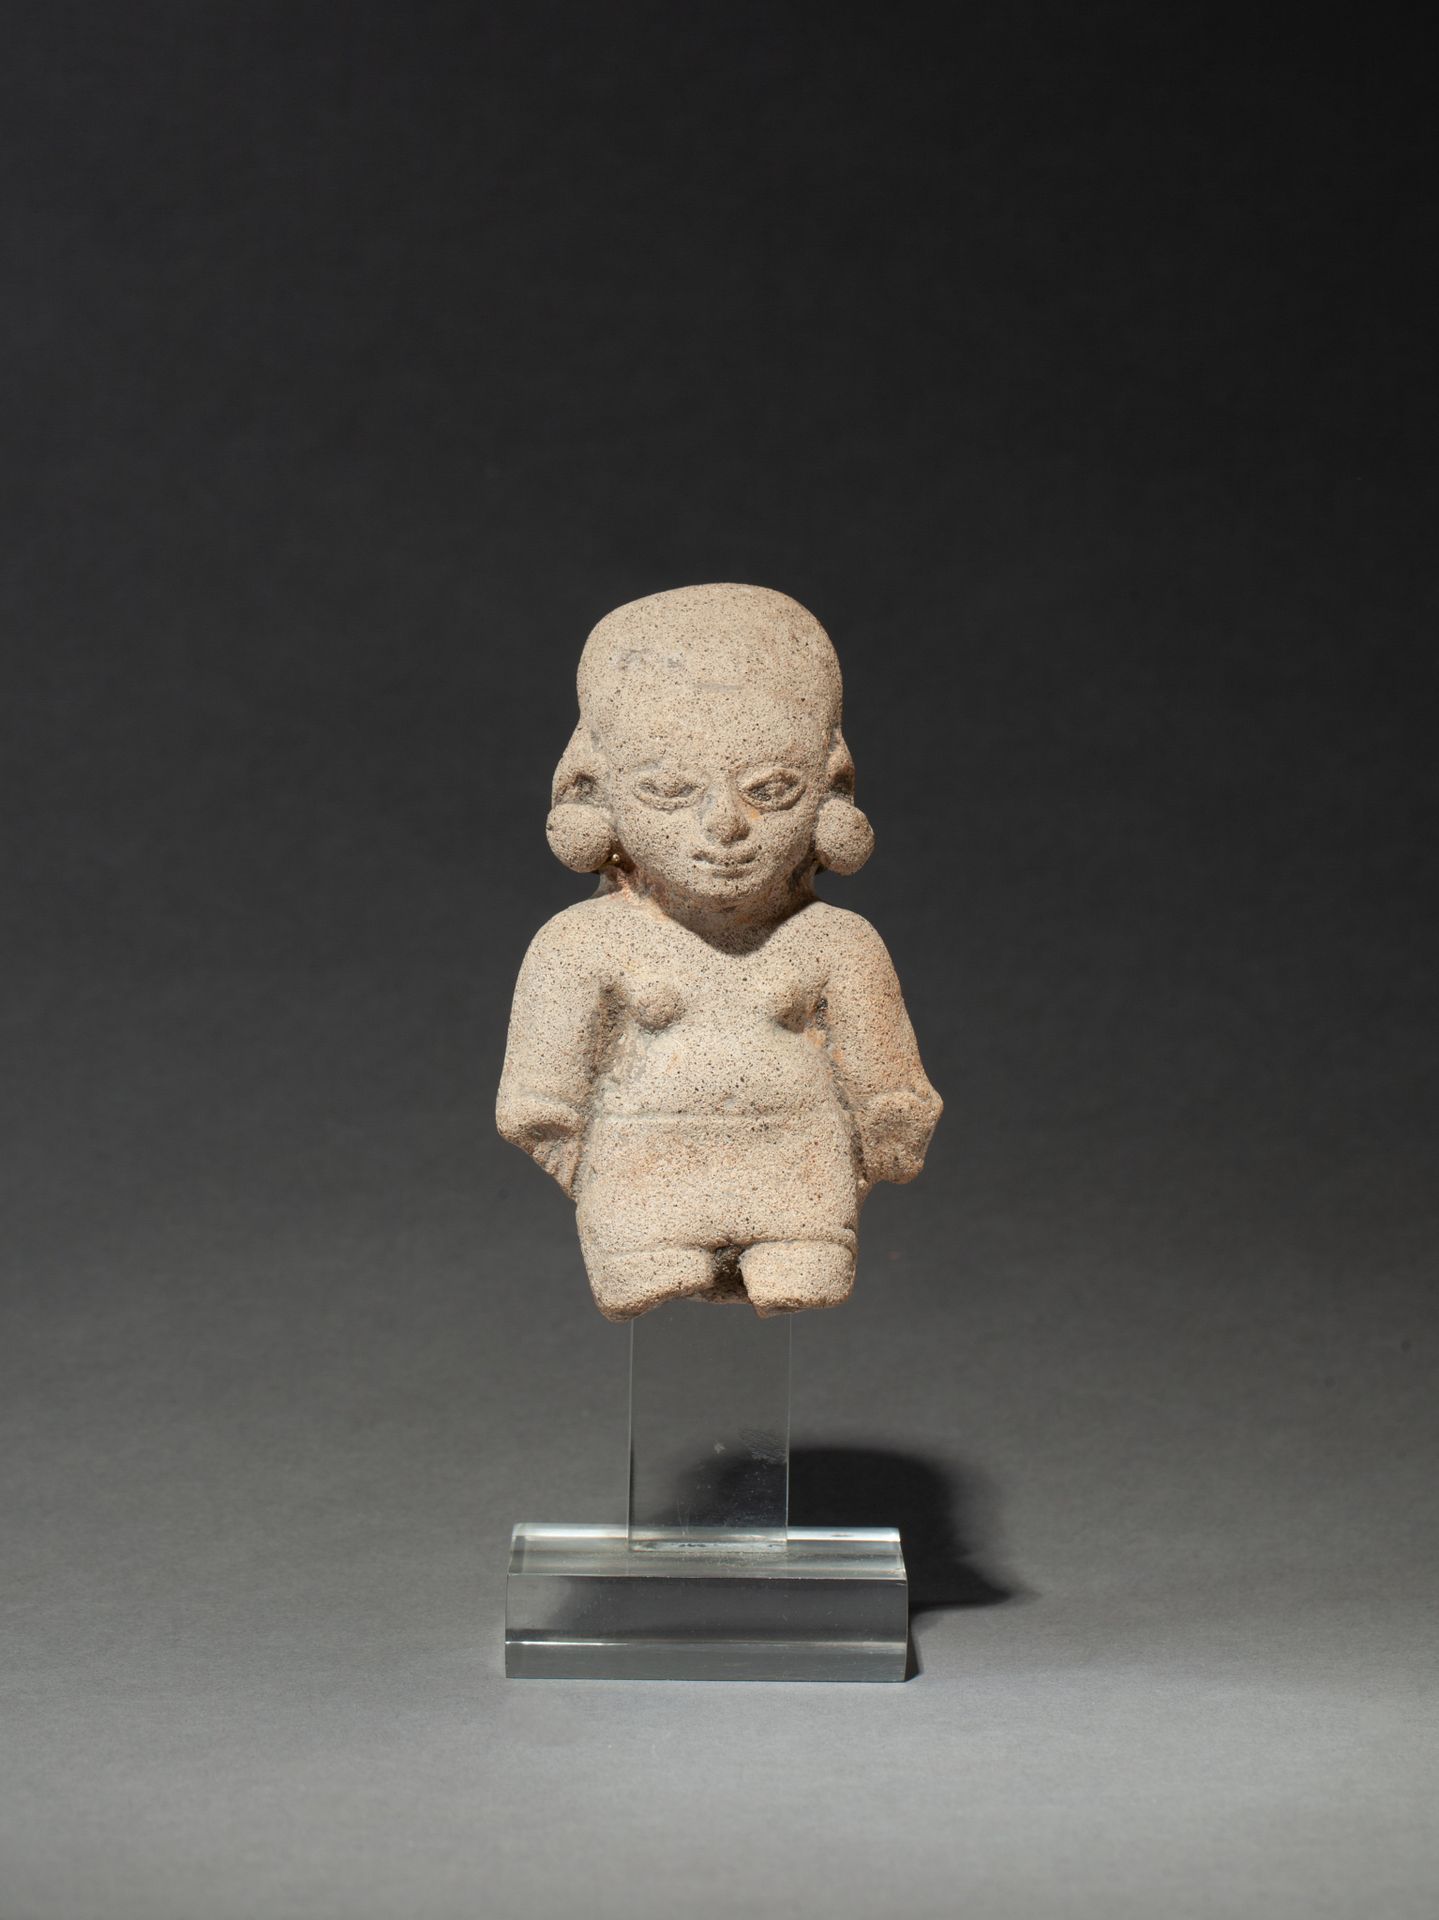 Buste de jeune prêtre 畸形头骨

米色赤土。 

图马科，托利塔岛，公元前500年至公元500年

10厘米